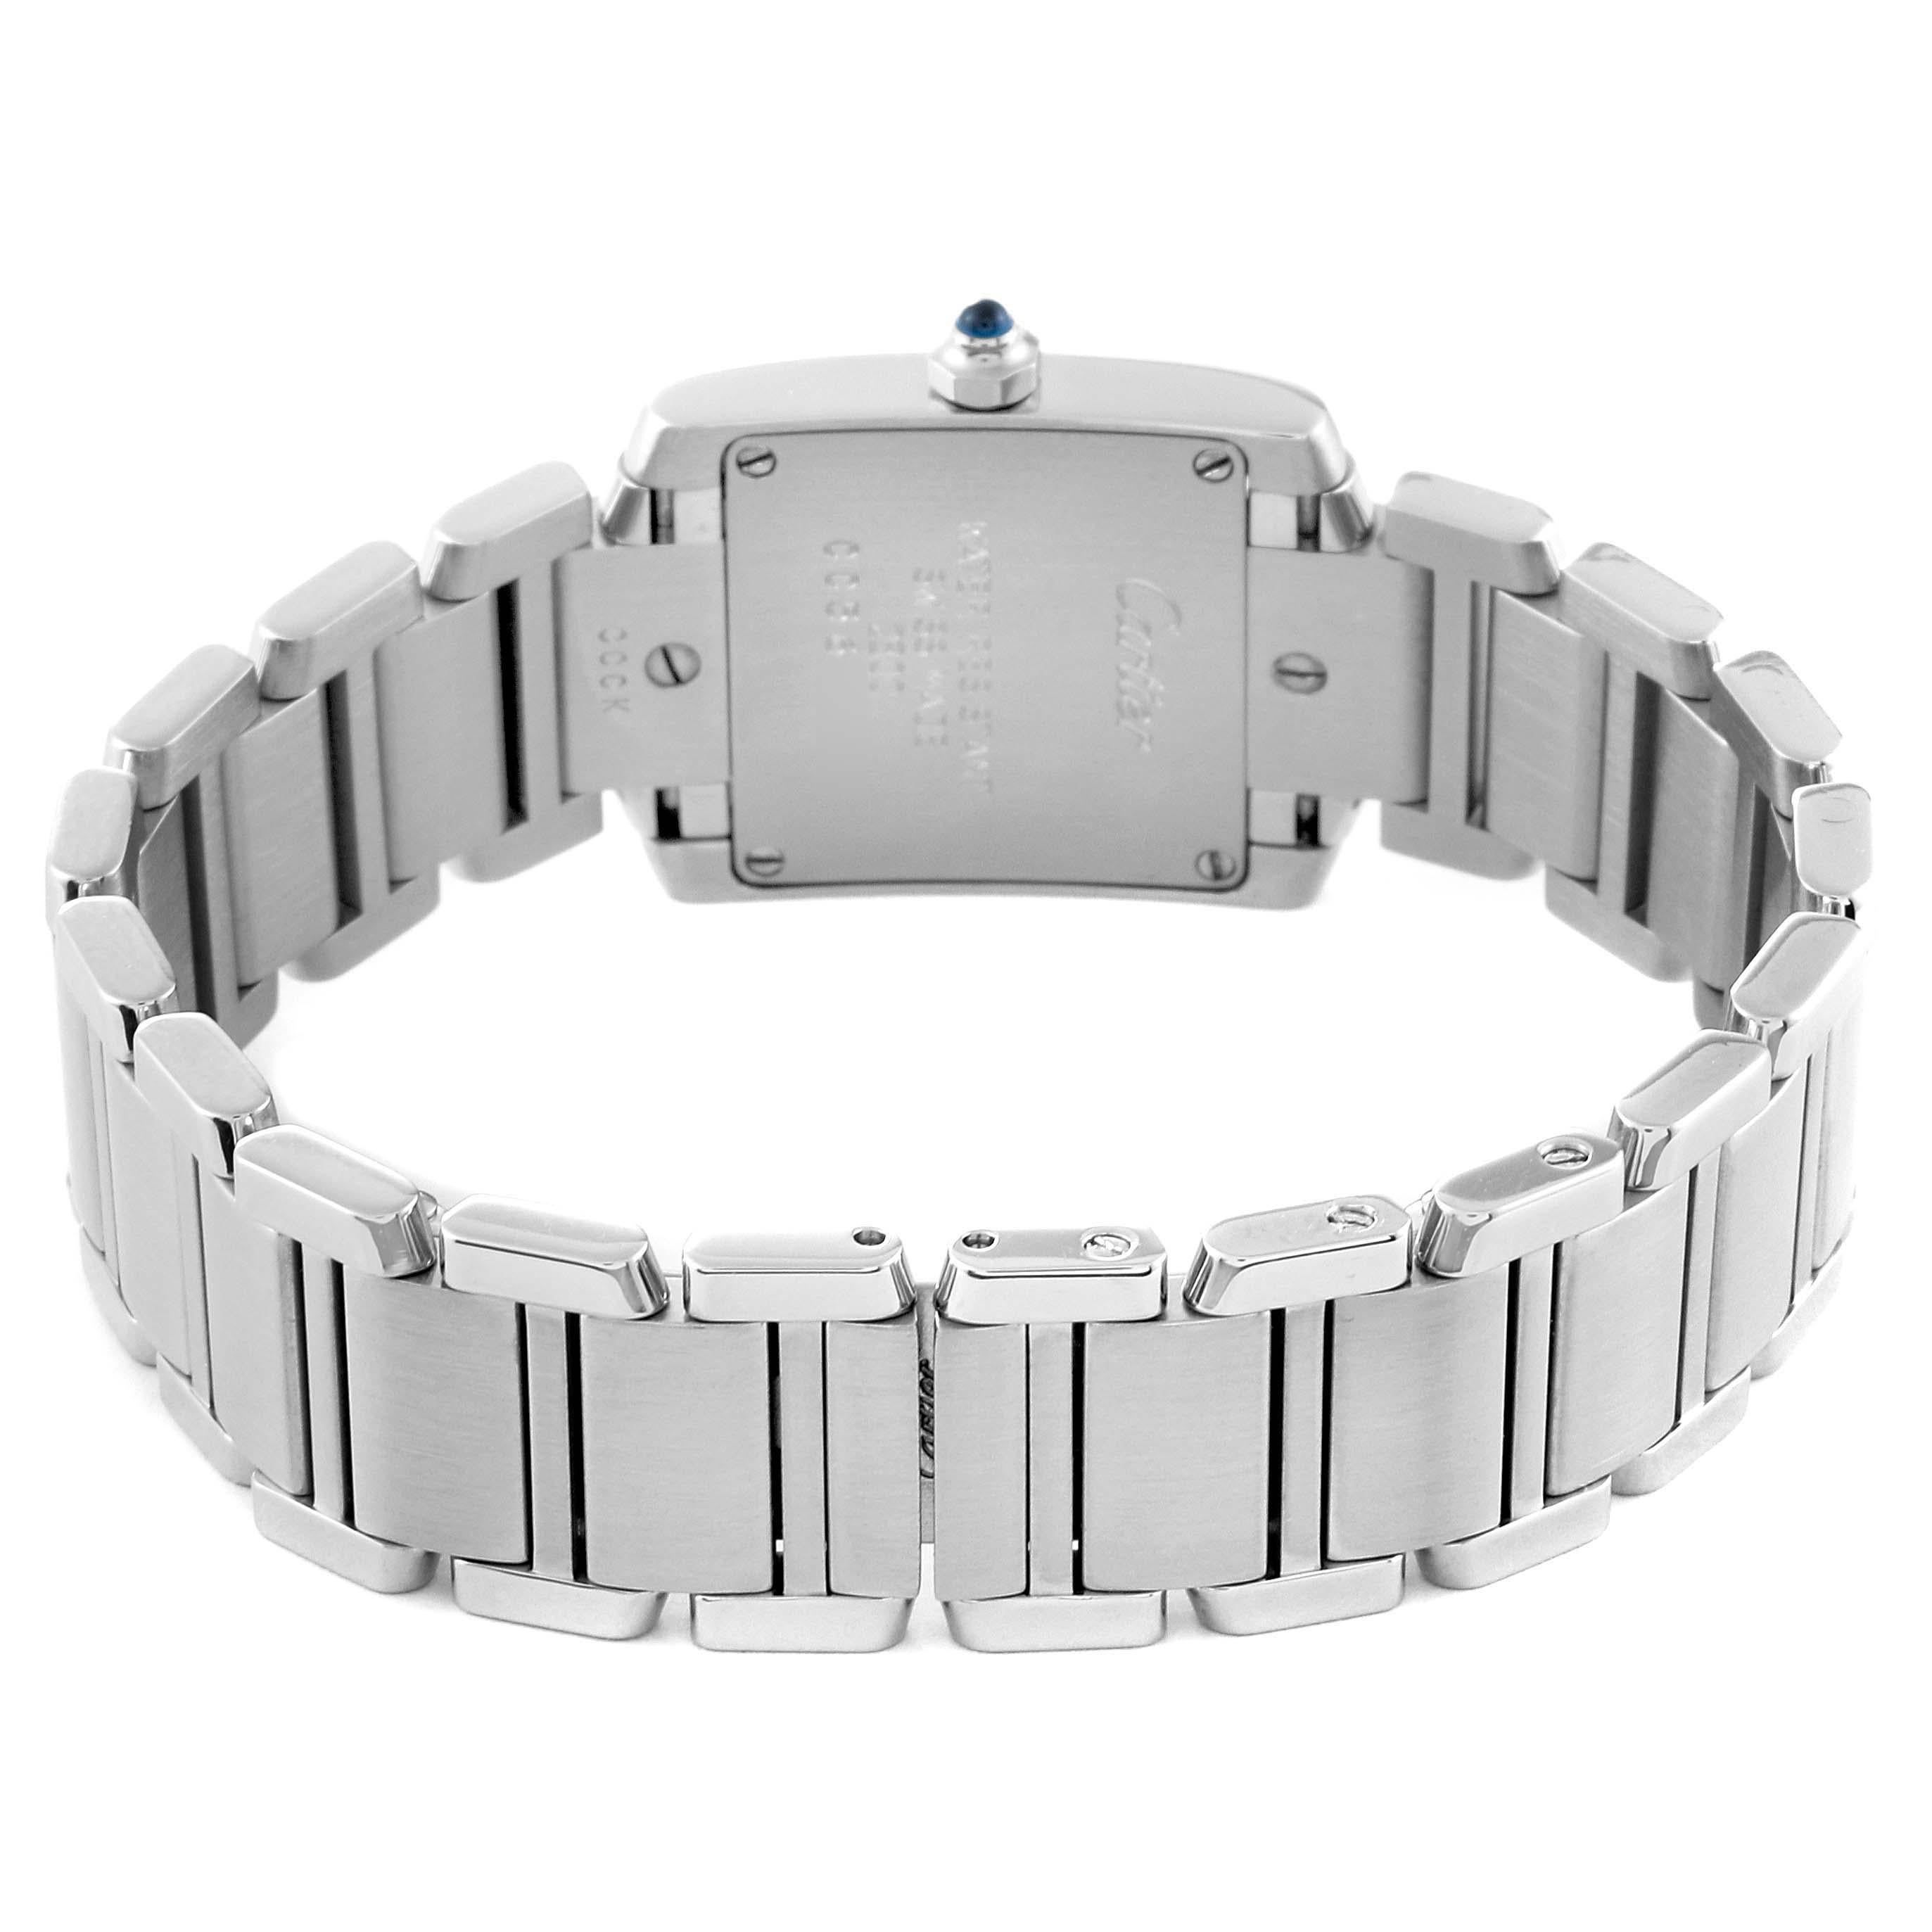 Cartier, petite montre Tank Francaise en acier avec cadran argenté pour femmes W51008Q3 1